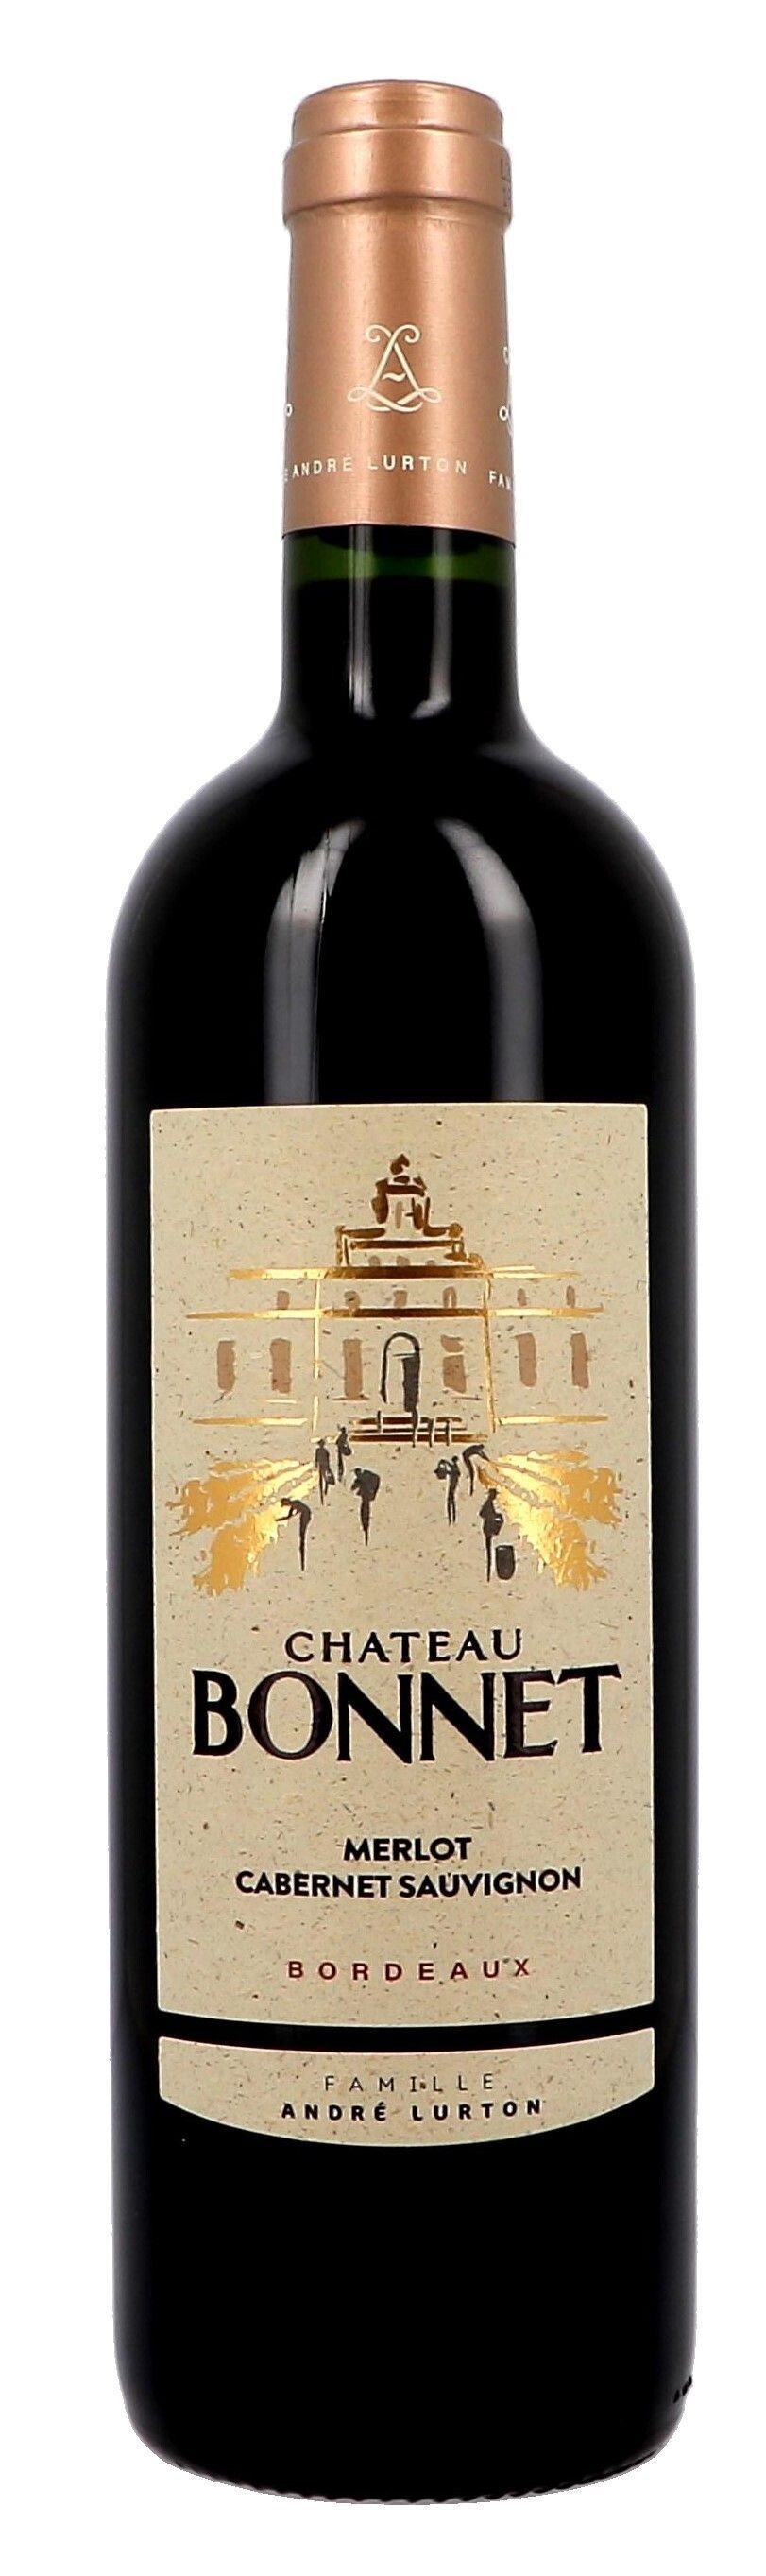 Chateau Bonnet red 75cl 2019 Bordeaux Andre Lurton